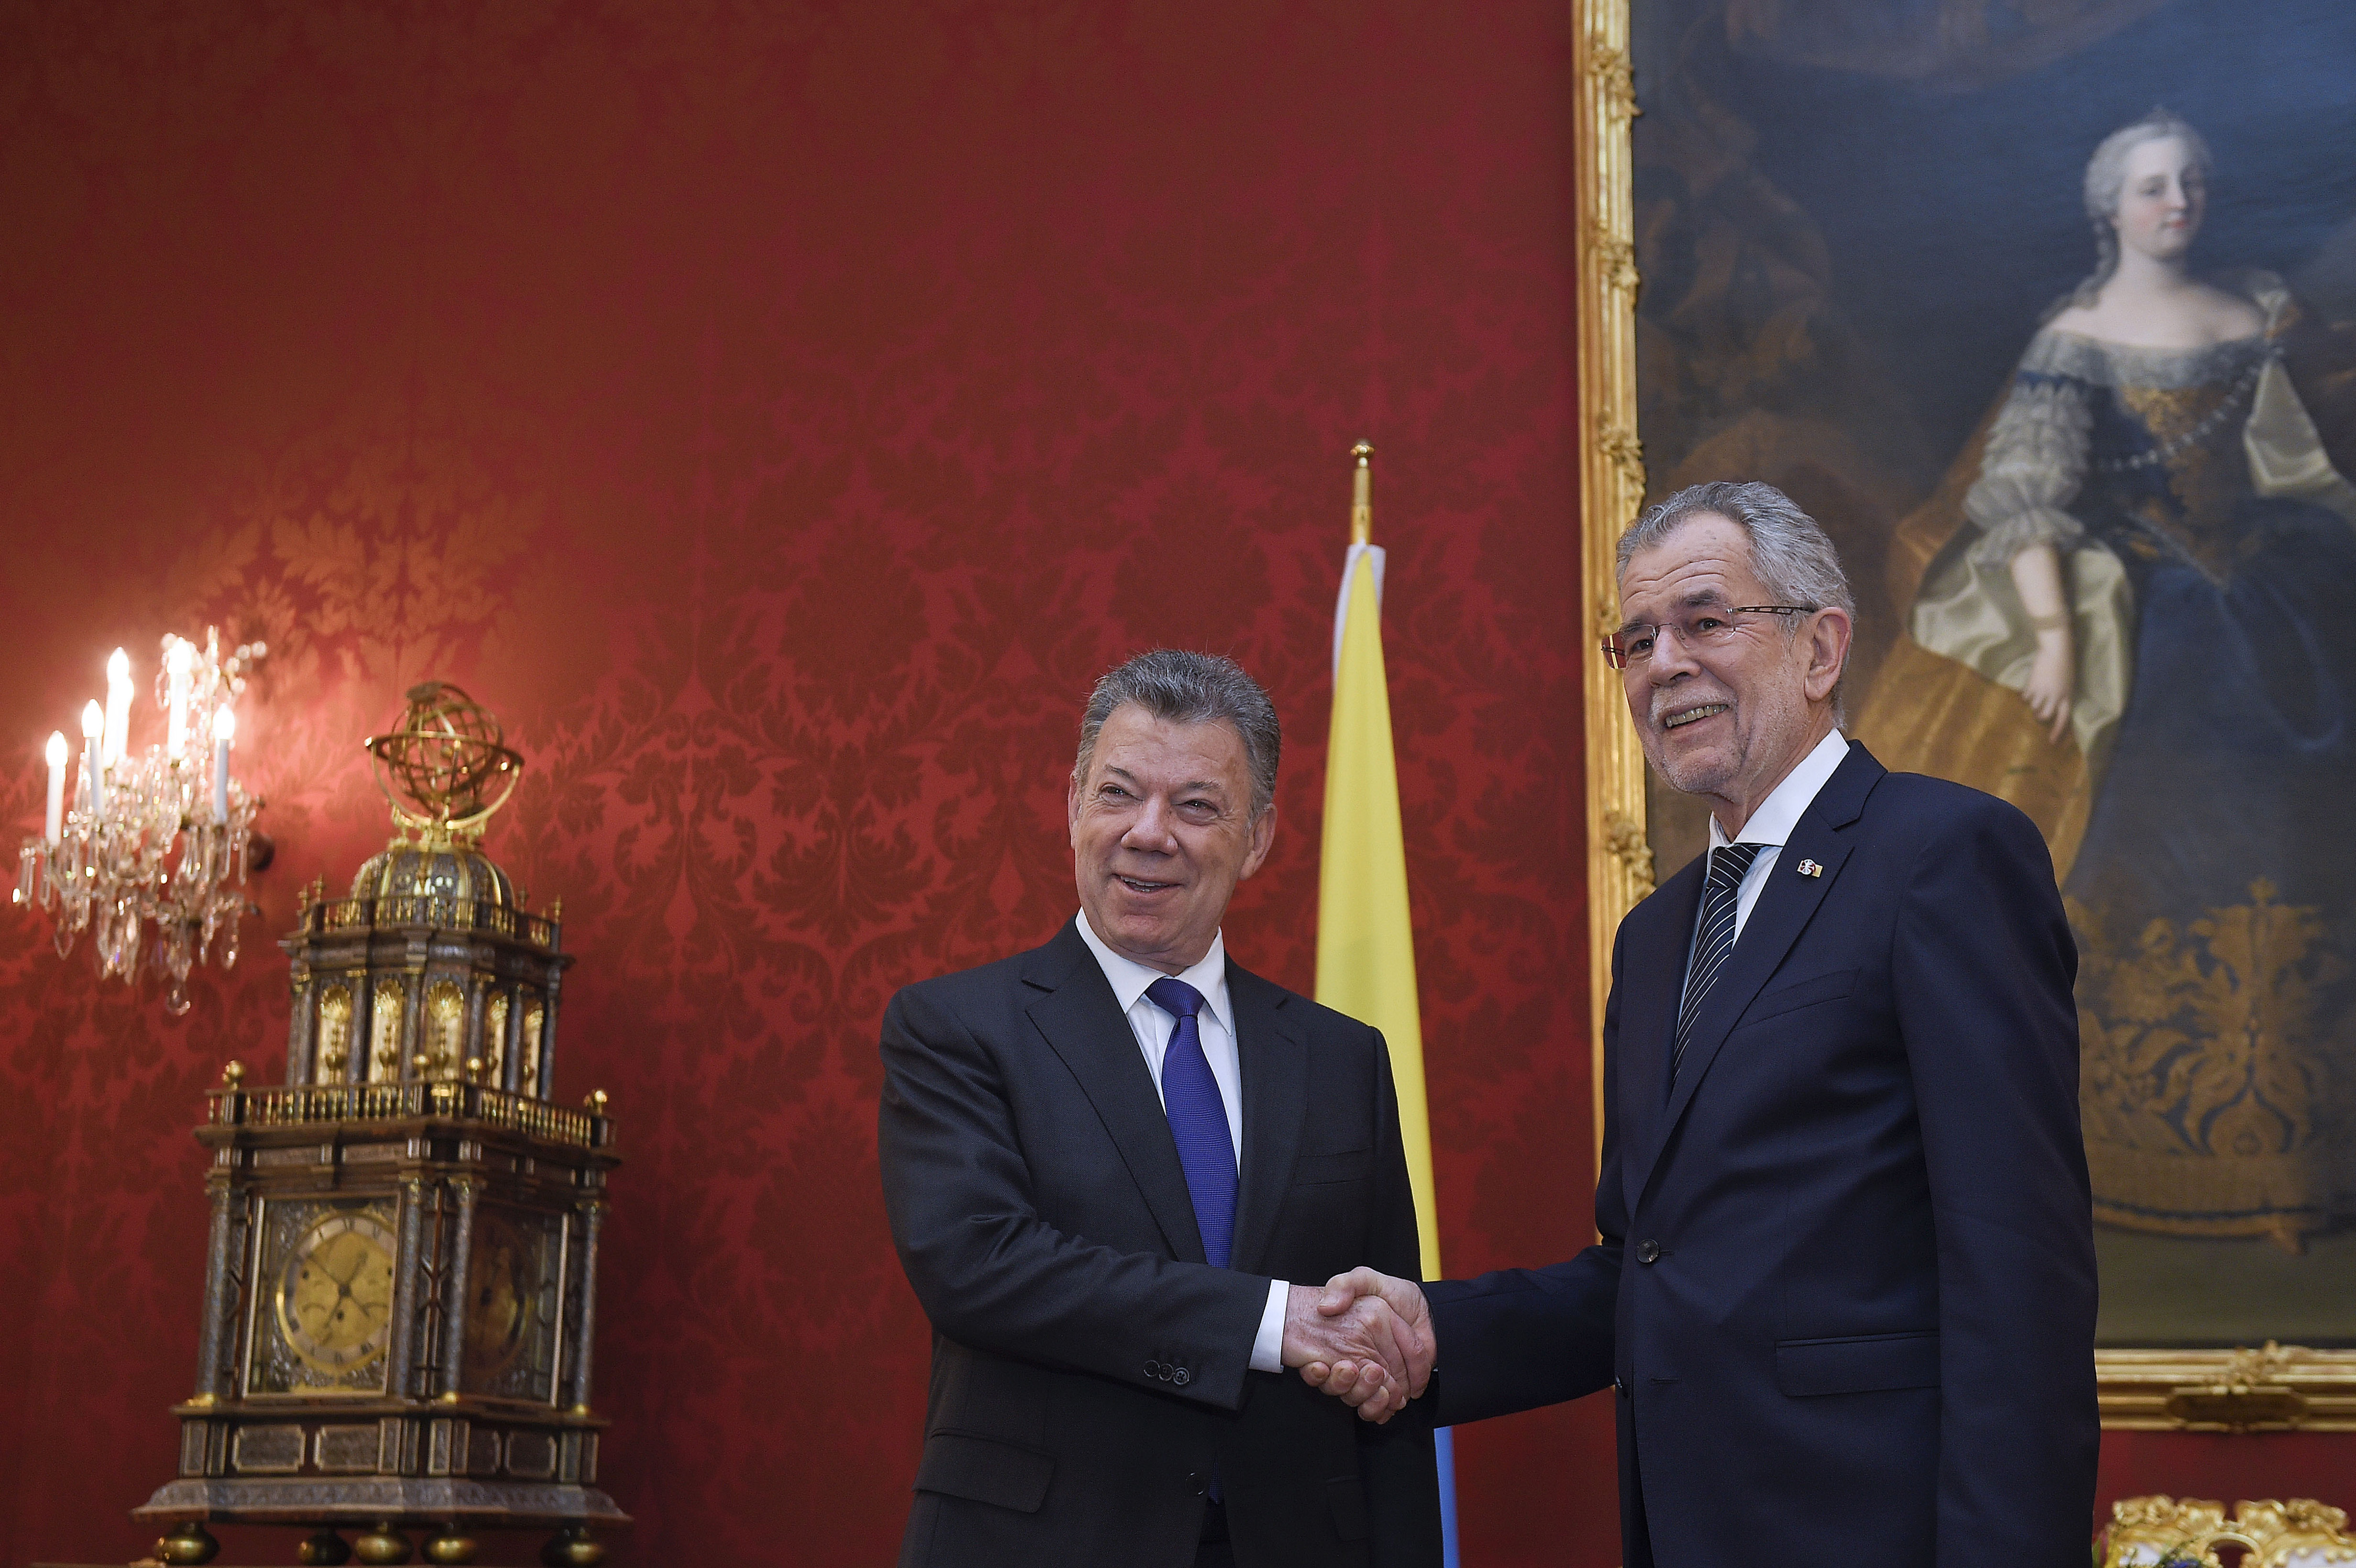 Paz, acuerdo comercial y OCDE: temas tratados en la reunión privada entre los presidentes de Colombia y Austria